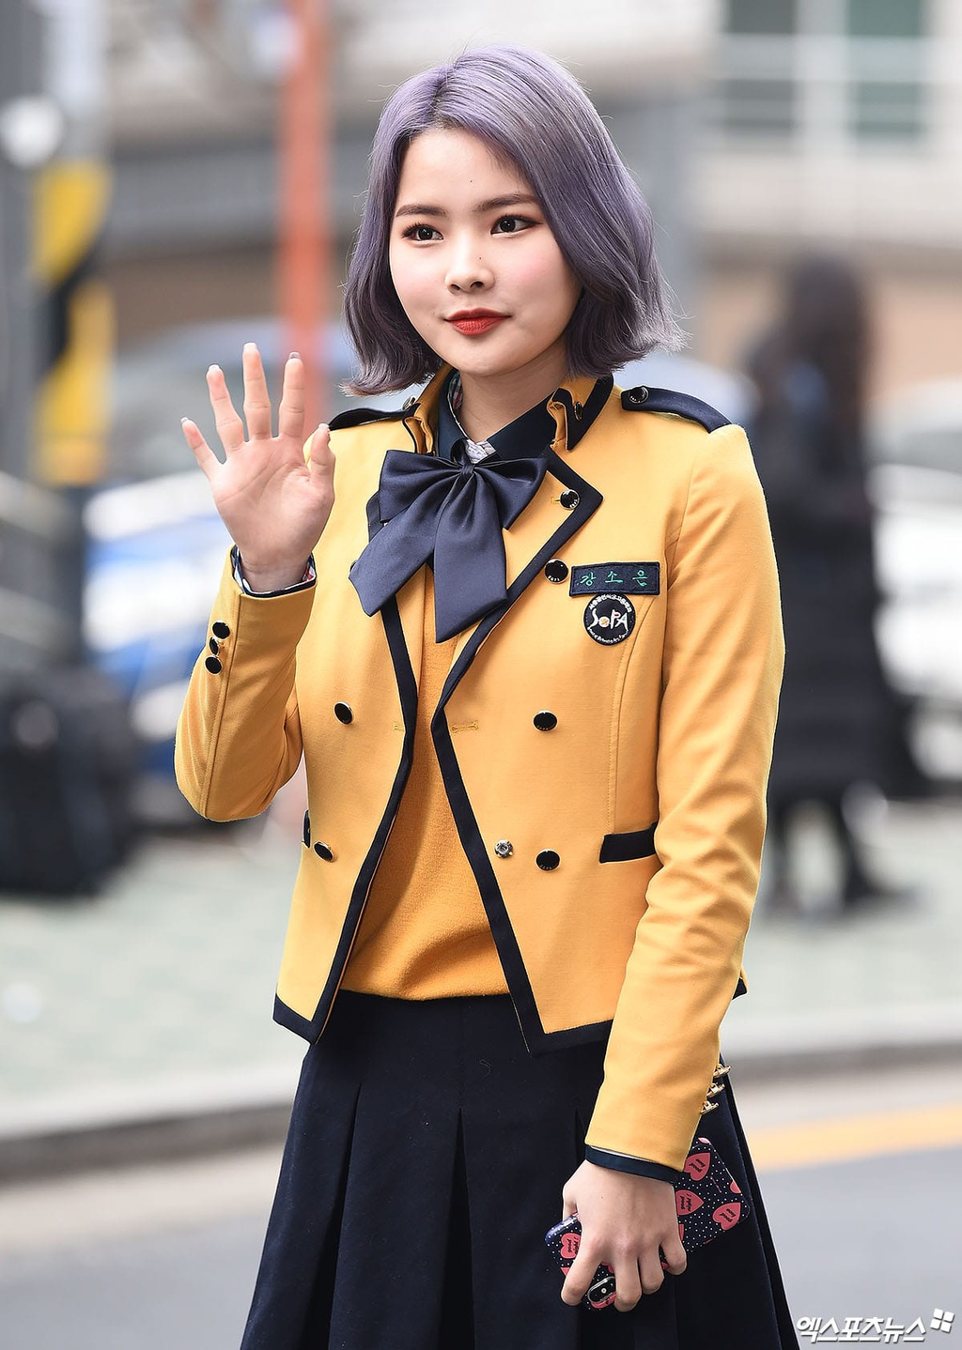 Mỹ nữ Hàn đẹp từng centimet trong đồng phục nữ sinh